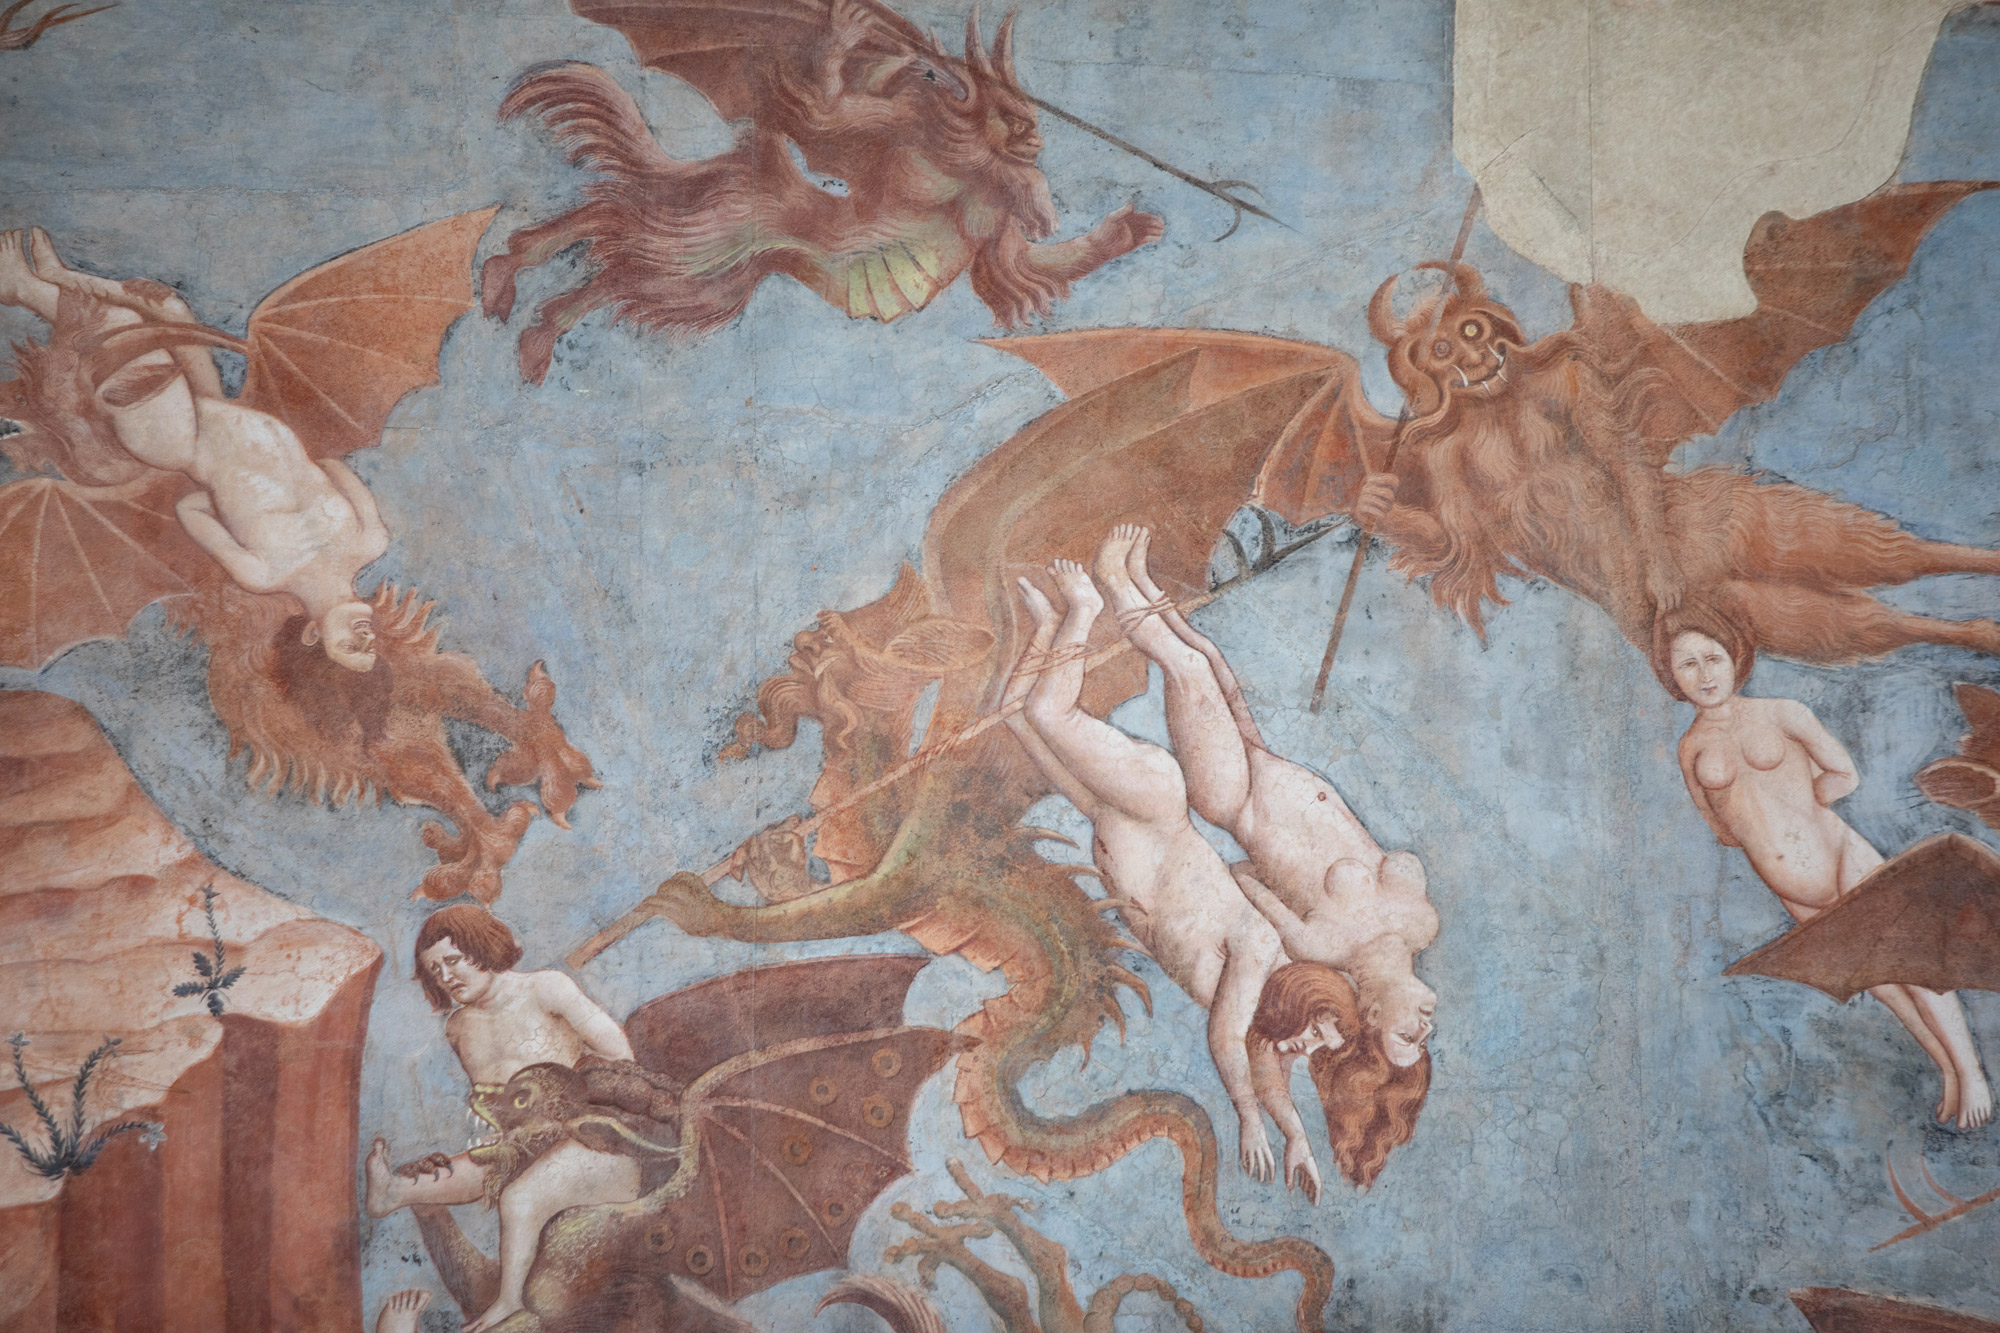 Bonamico Buffalmacco, Trionfo della Morte, dettaglio dei demoni e degli angeli che si disputano le anime
